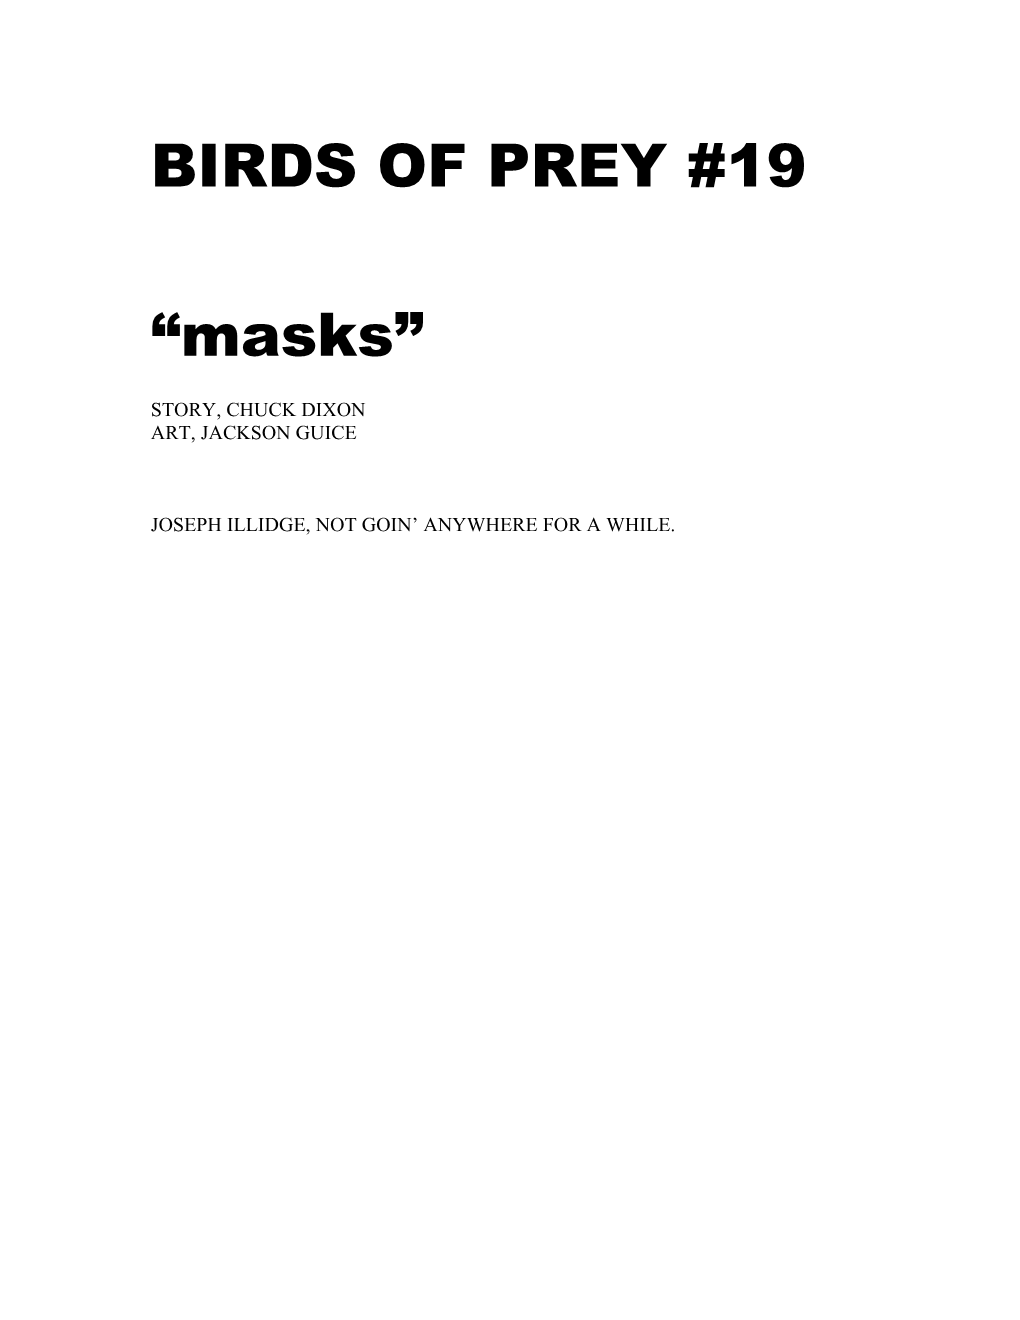 Birds of Prey #19